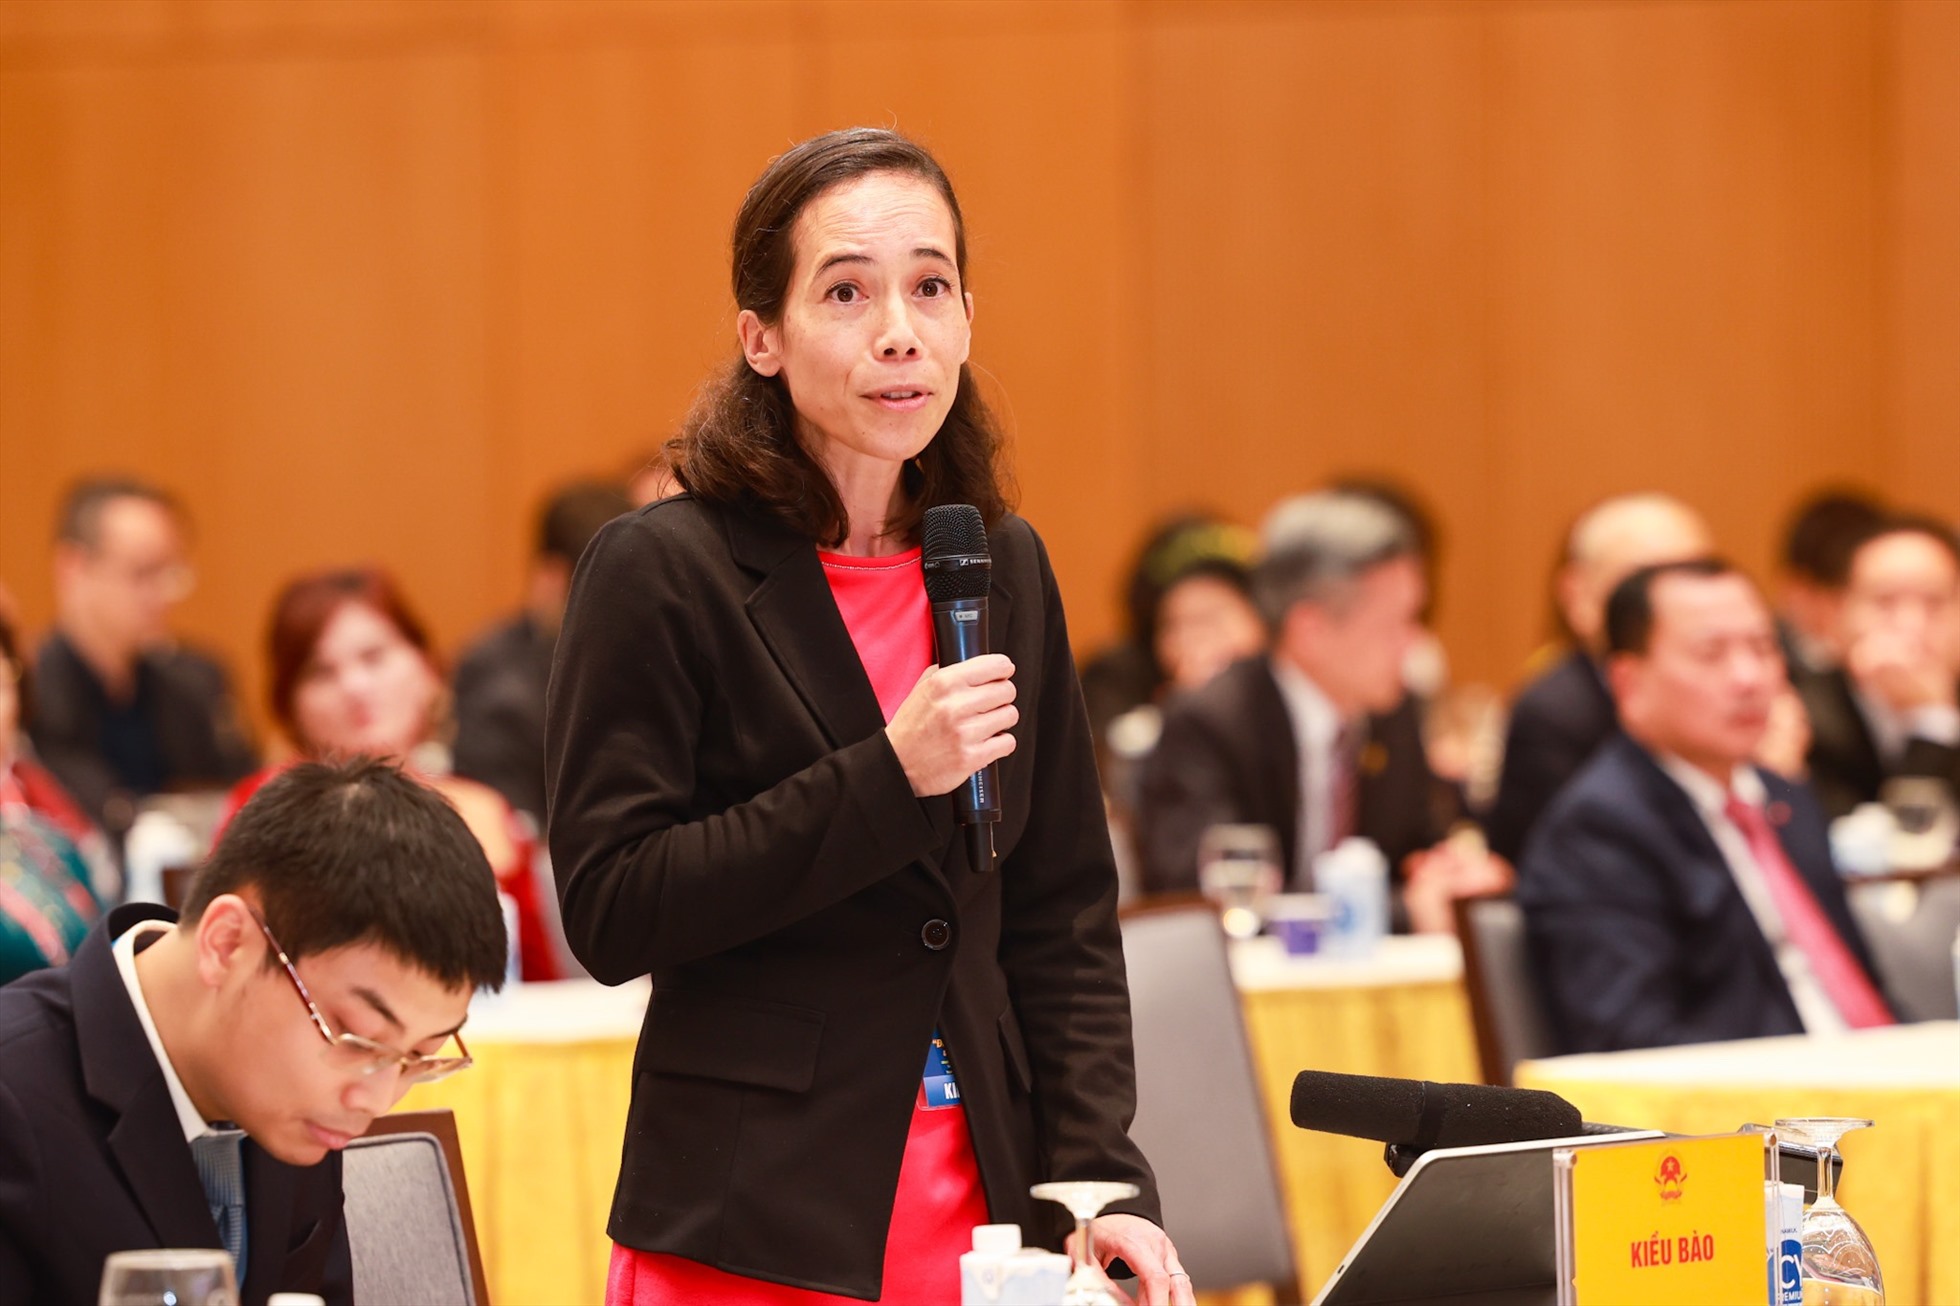 Trong ảnh, bà Aurélia Nguyen - Giám đốc chiến lược Chương trình của Liên minh Toàn cầu về vaccine và tiêm chủng (GAVI), nguyên Giám đốc điều hành cơ chế COVAX chia sẻ tại sự kiện. Ảnh: Hải Nguyễn